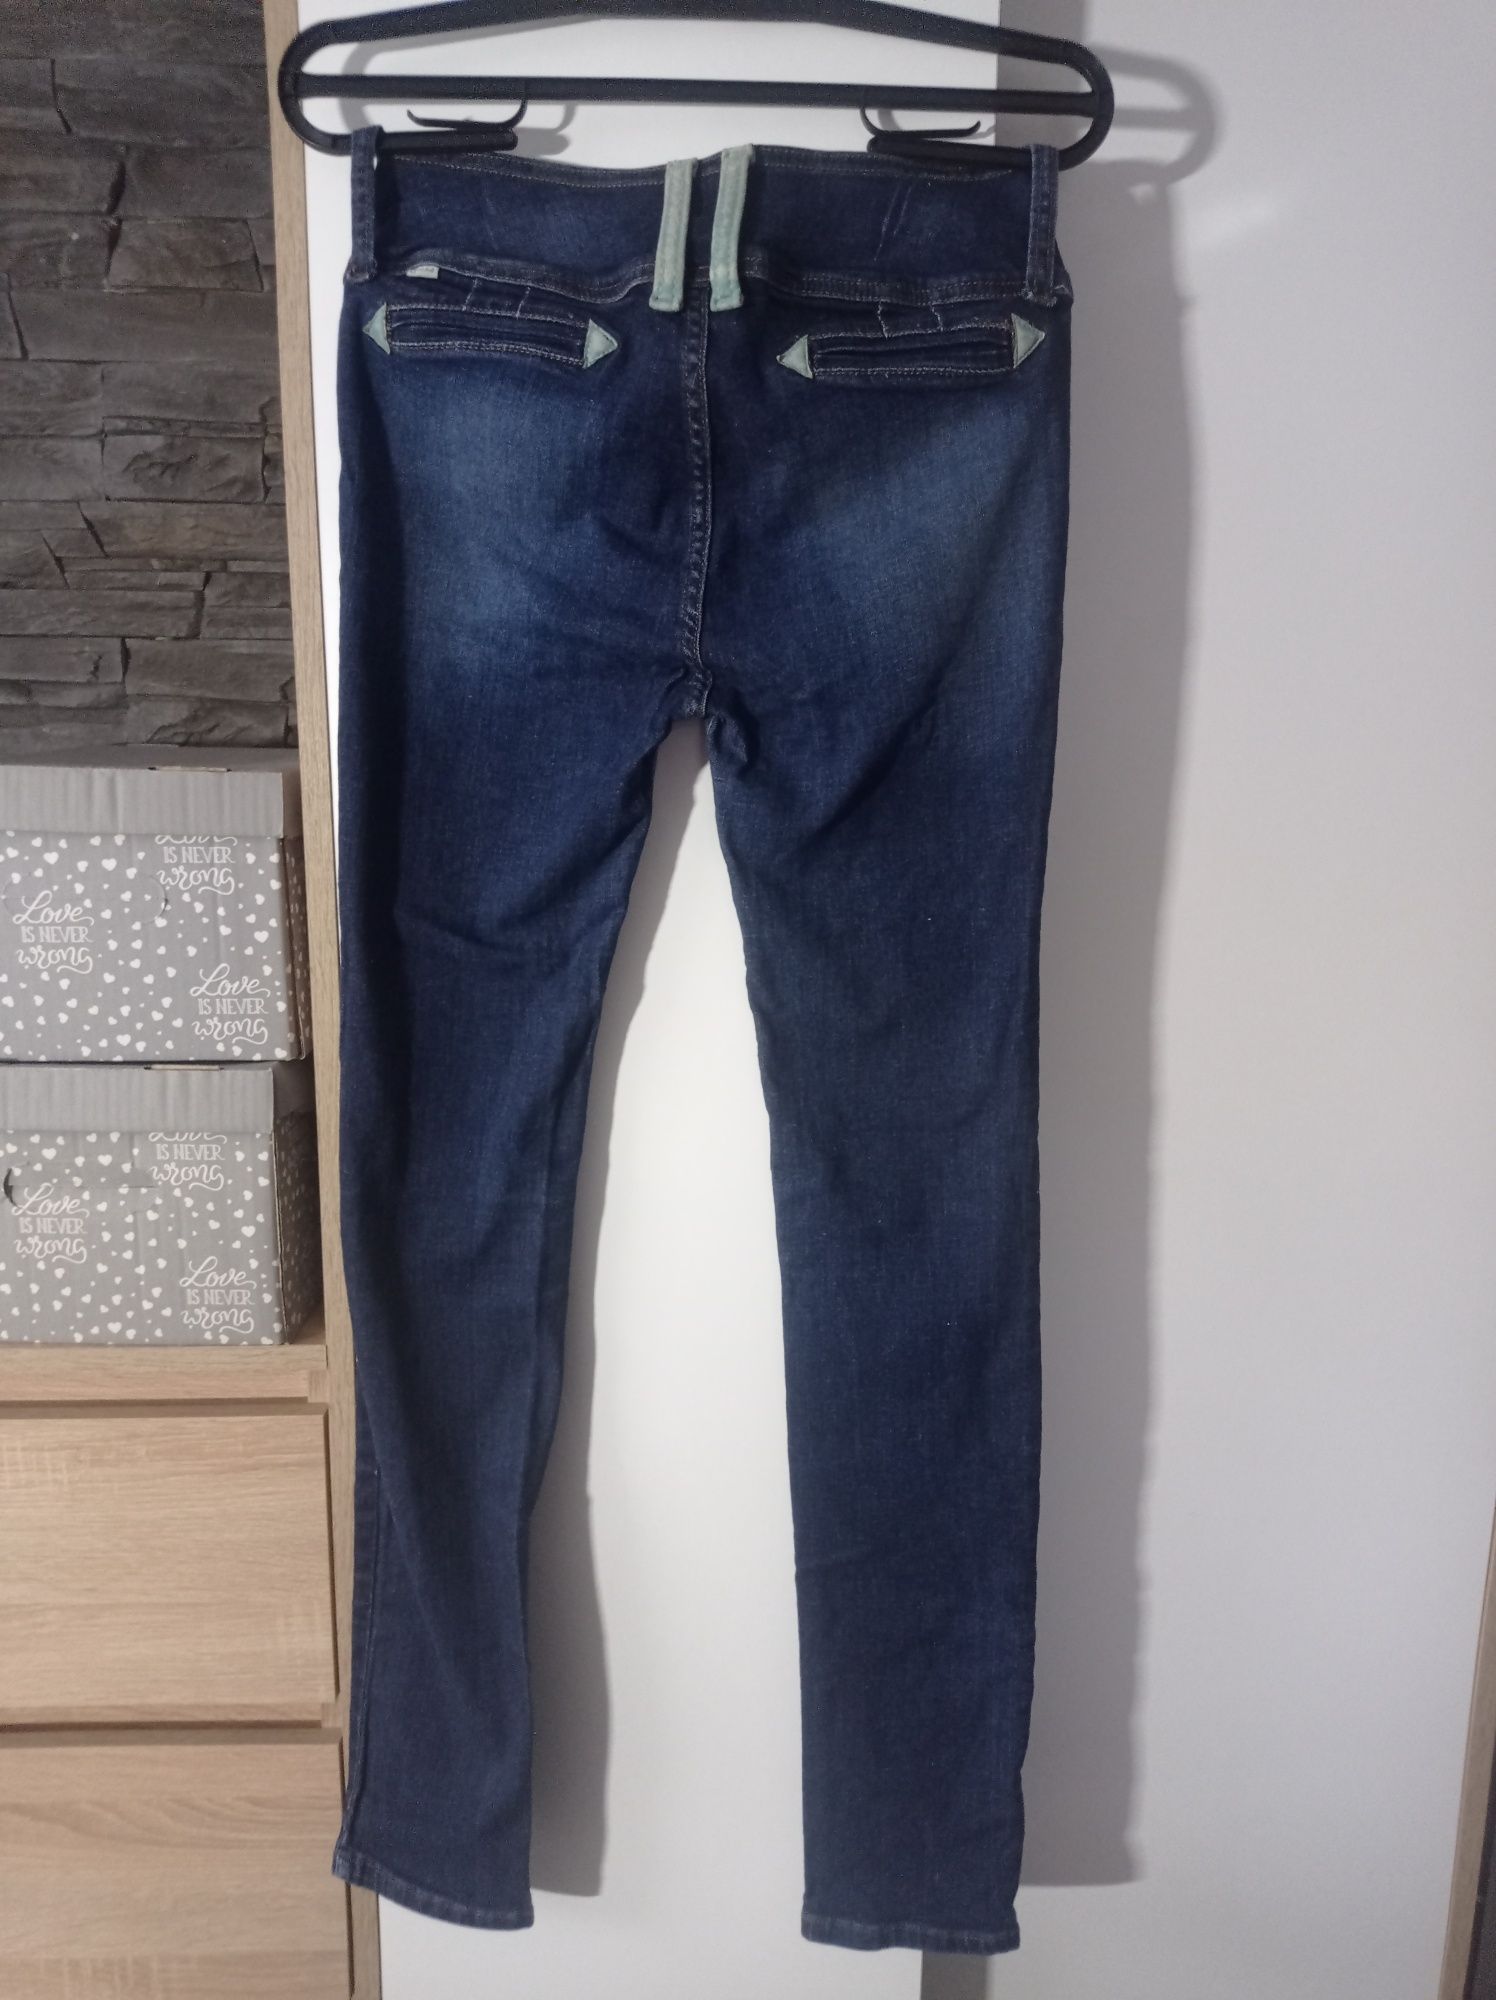 Gotha jeans, damskie jeansy